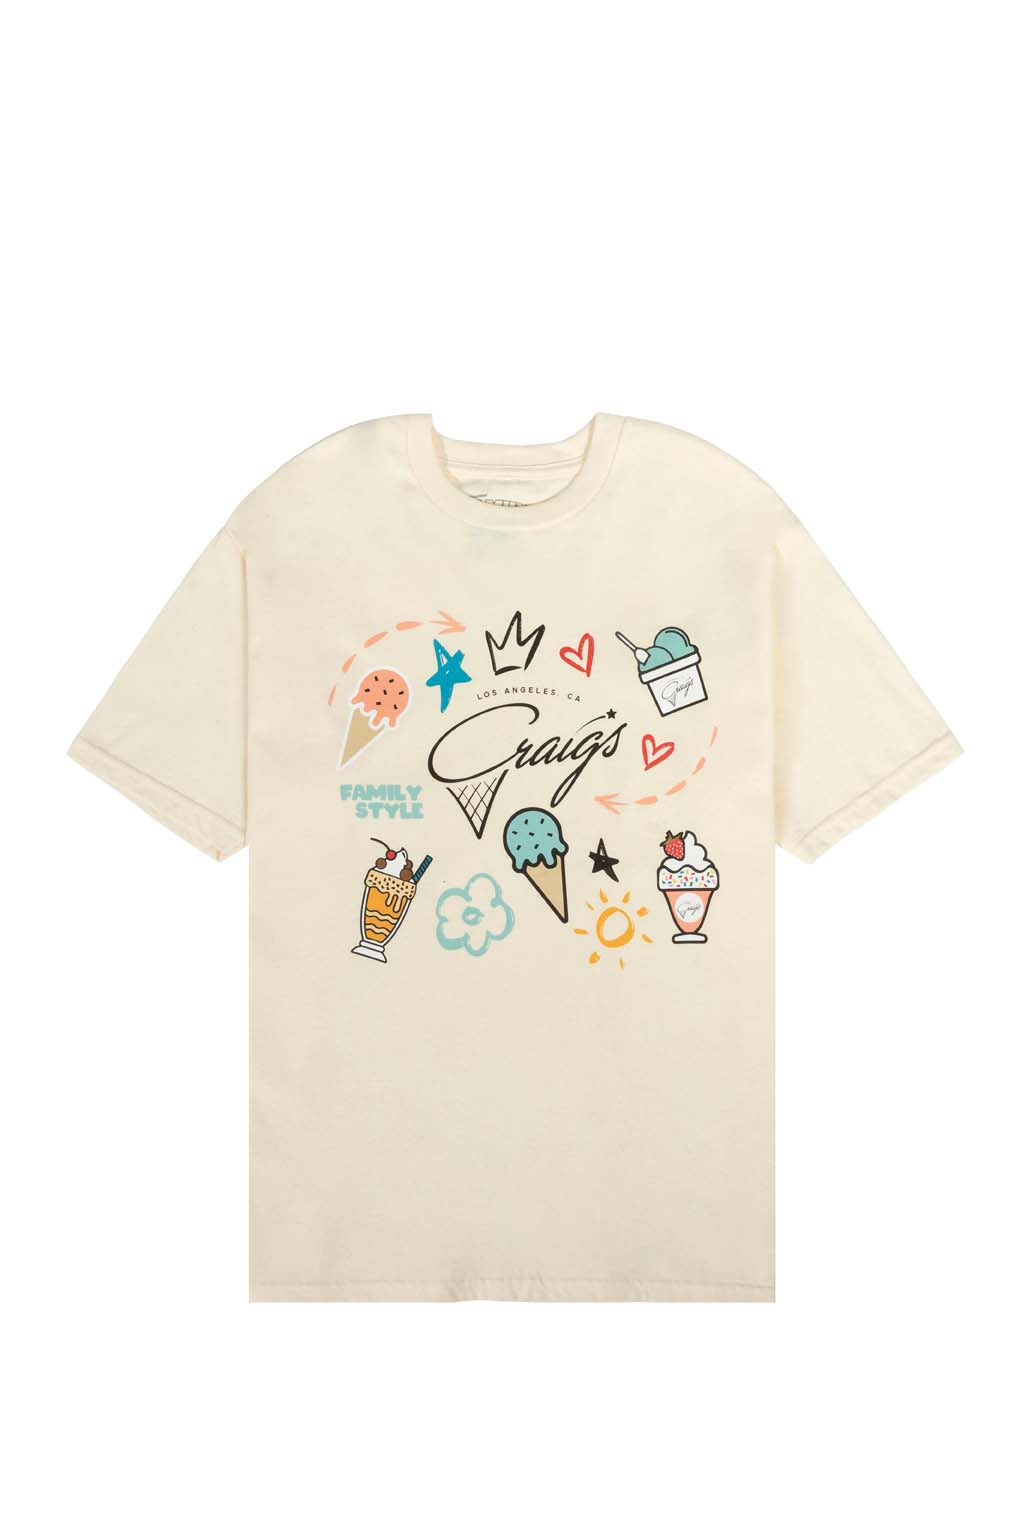 Craig's Ice Cream T-Shirt